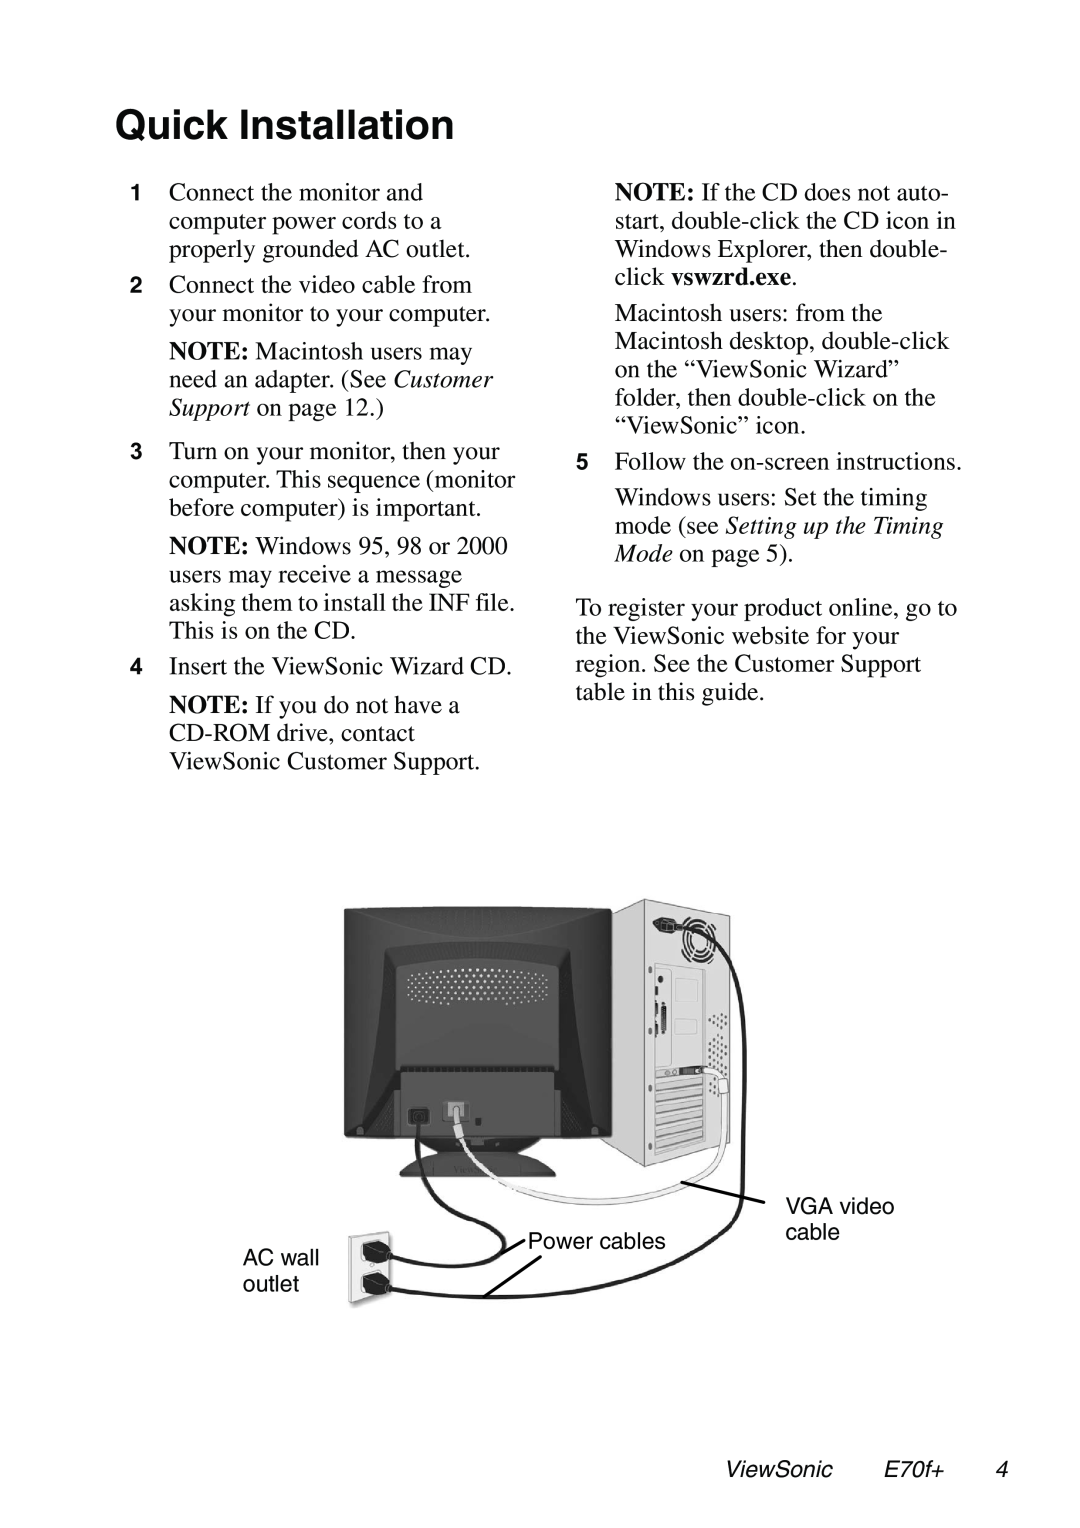 ViewSonic E70f+ manual Quick Installation 